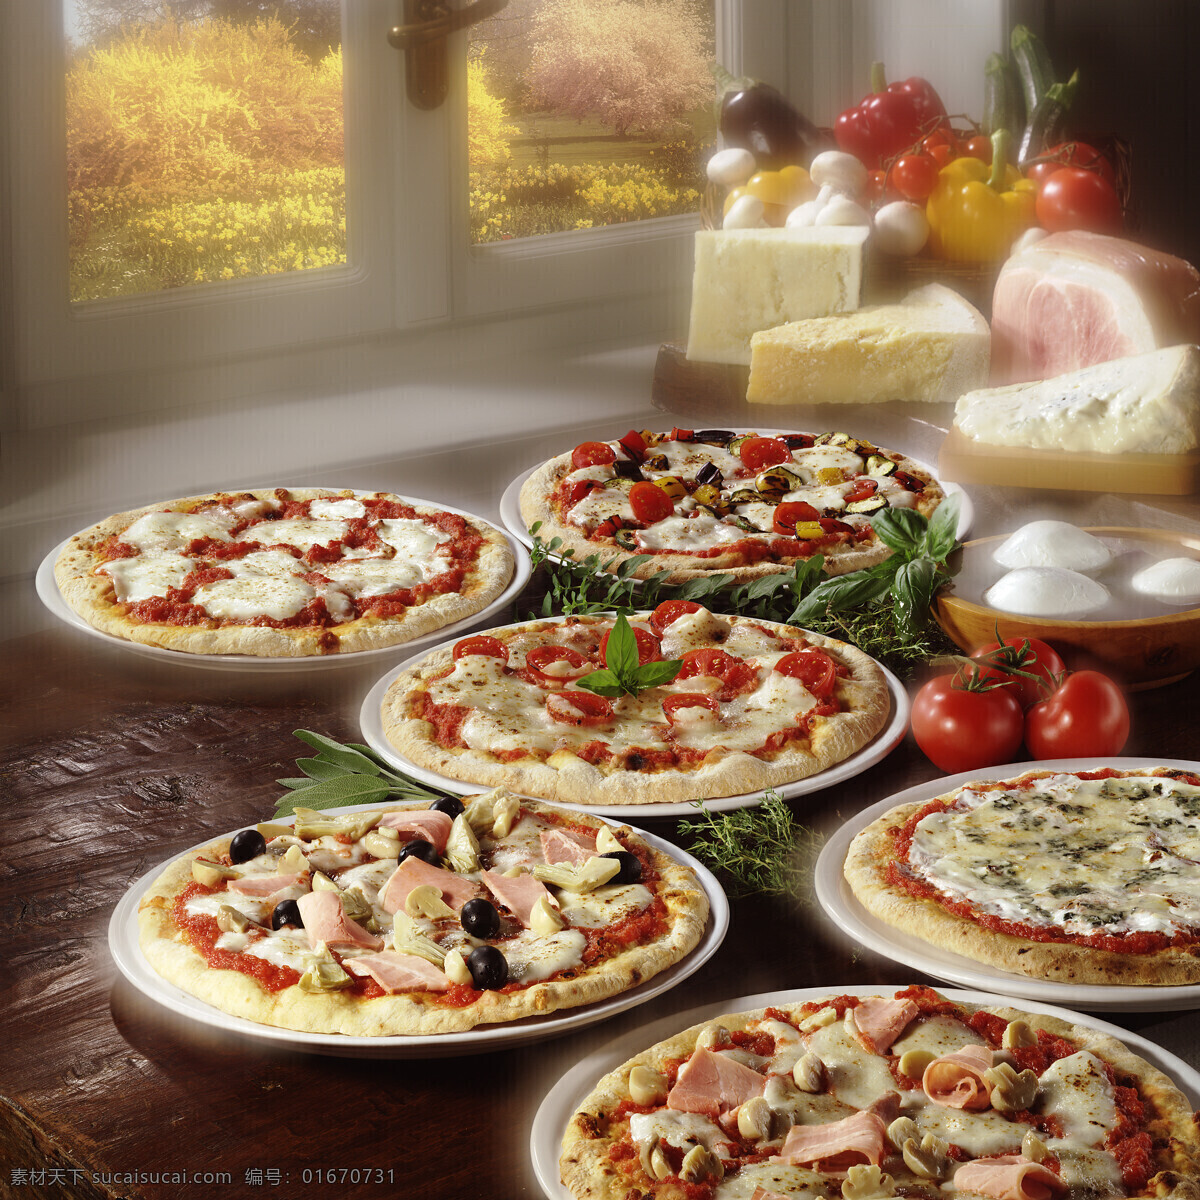 盘子里的披萨 披萨 盘子 意大利披萨 意大利美食 国外美食 美味 西餐美食 餐饮美食 黑色